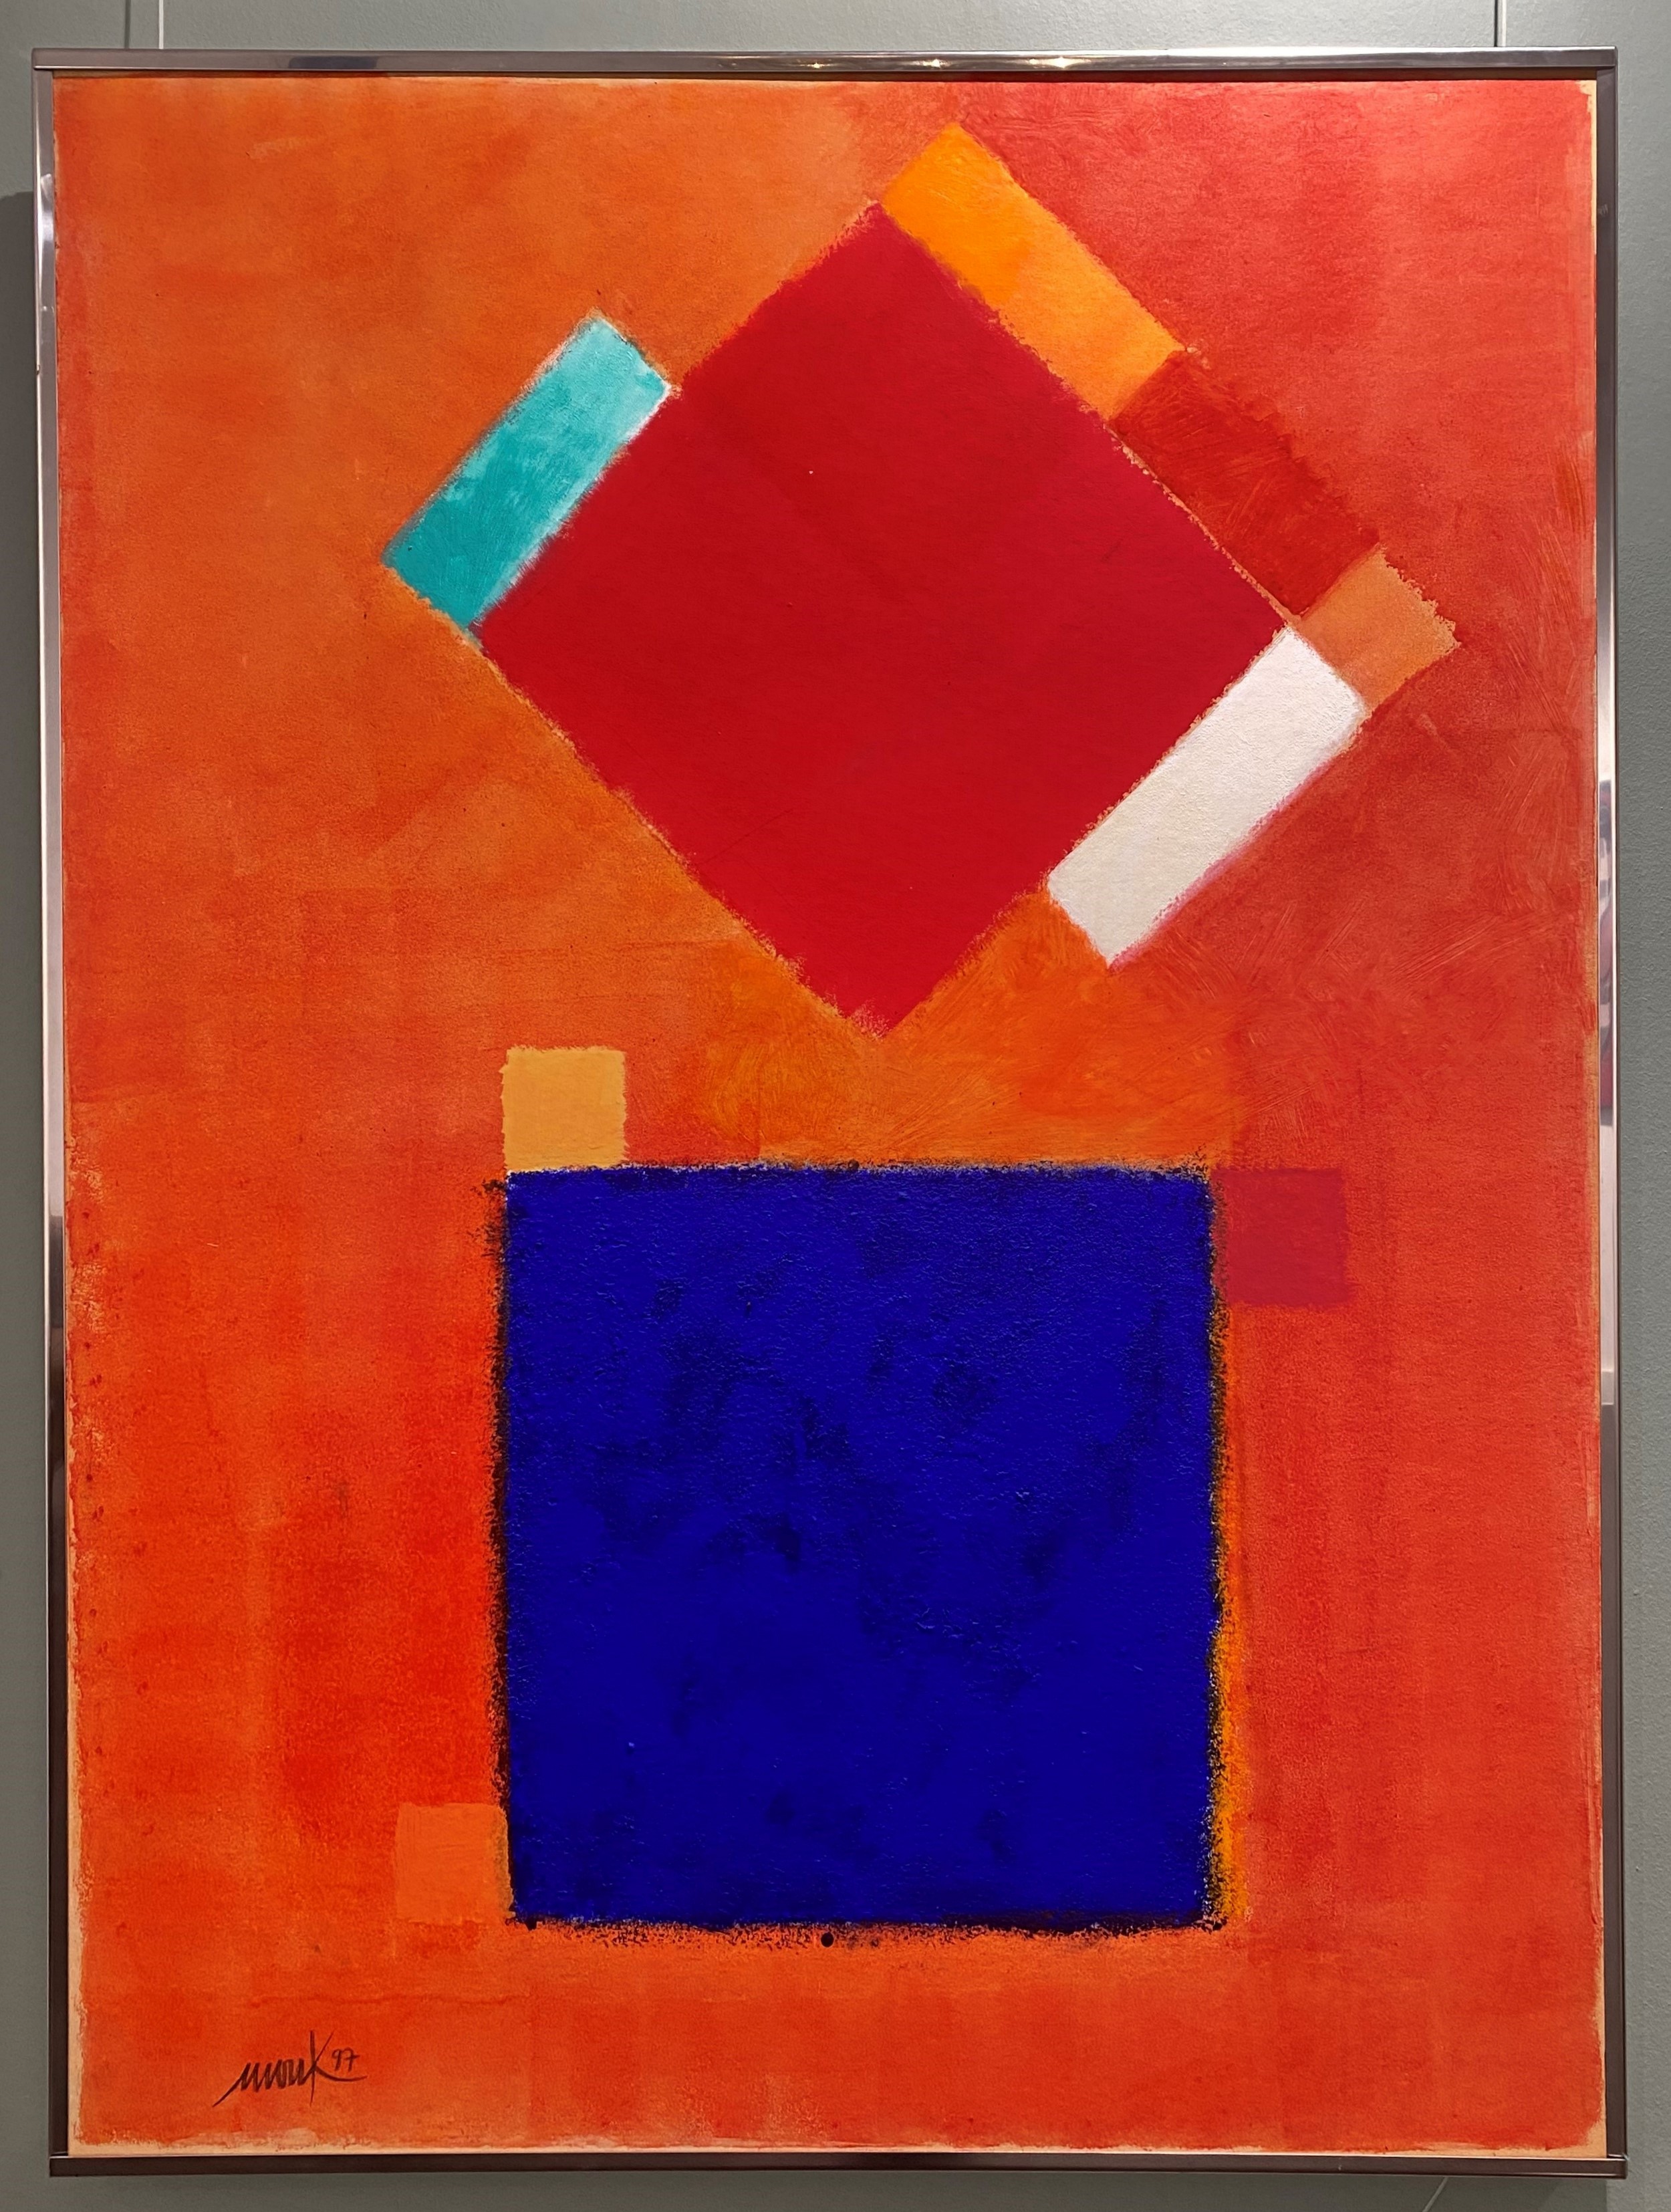 Blau wohnt im roten Haus (chromatische Konstellation), 1997